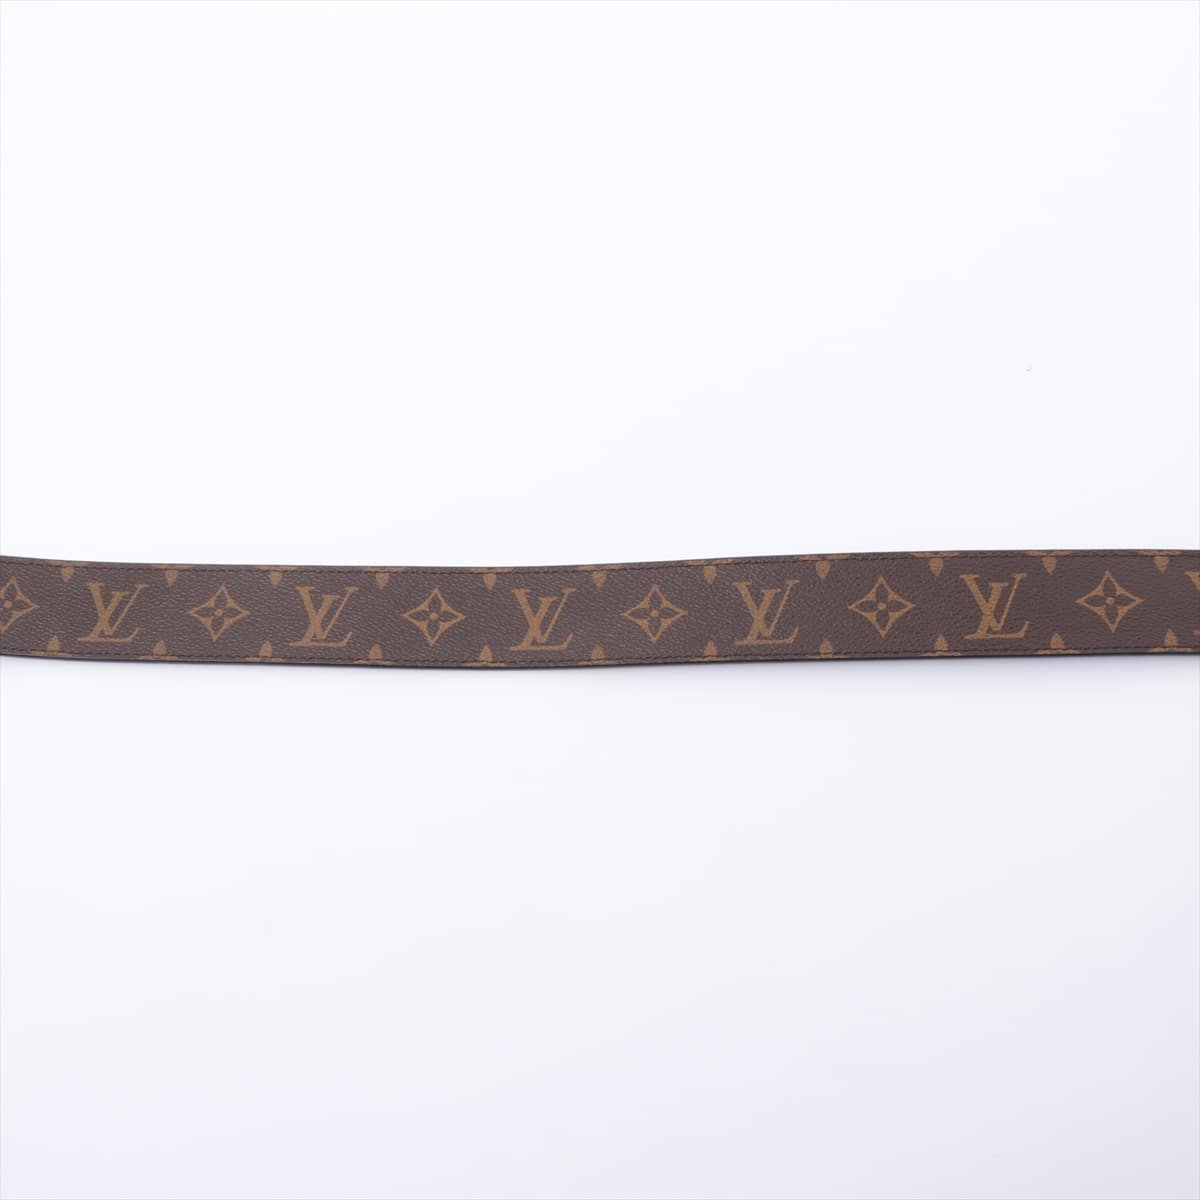 Louis Vuitton M9821 Ceinture initiales Belt 90/36 PVC & leather Black × Brown